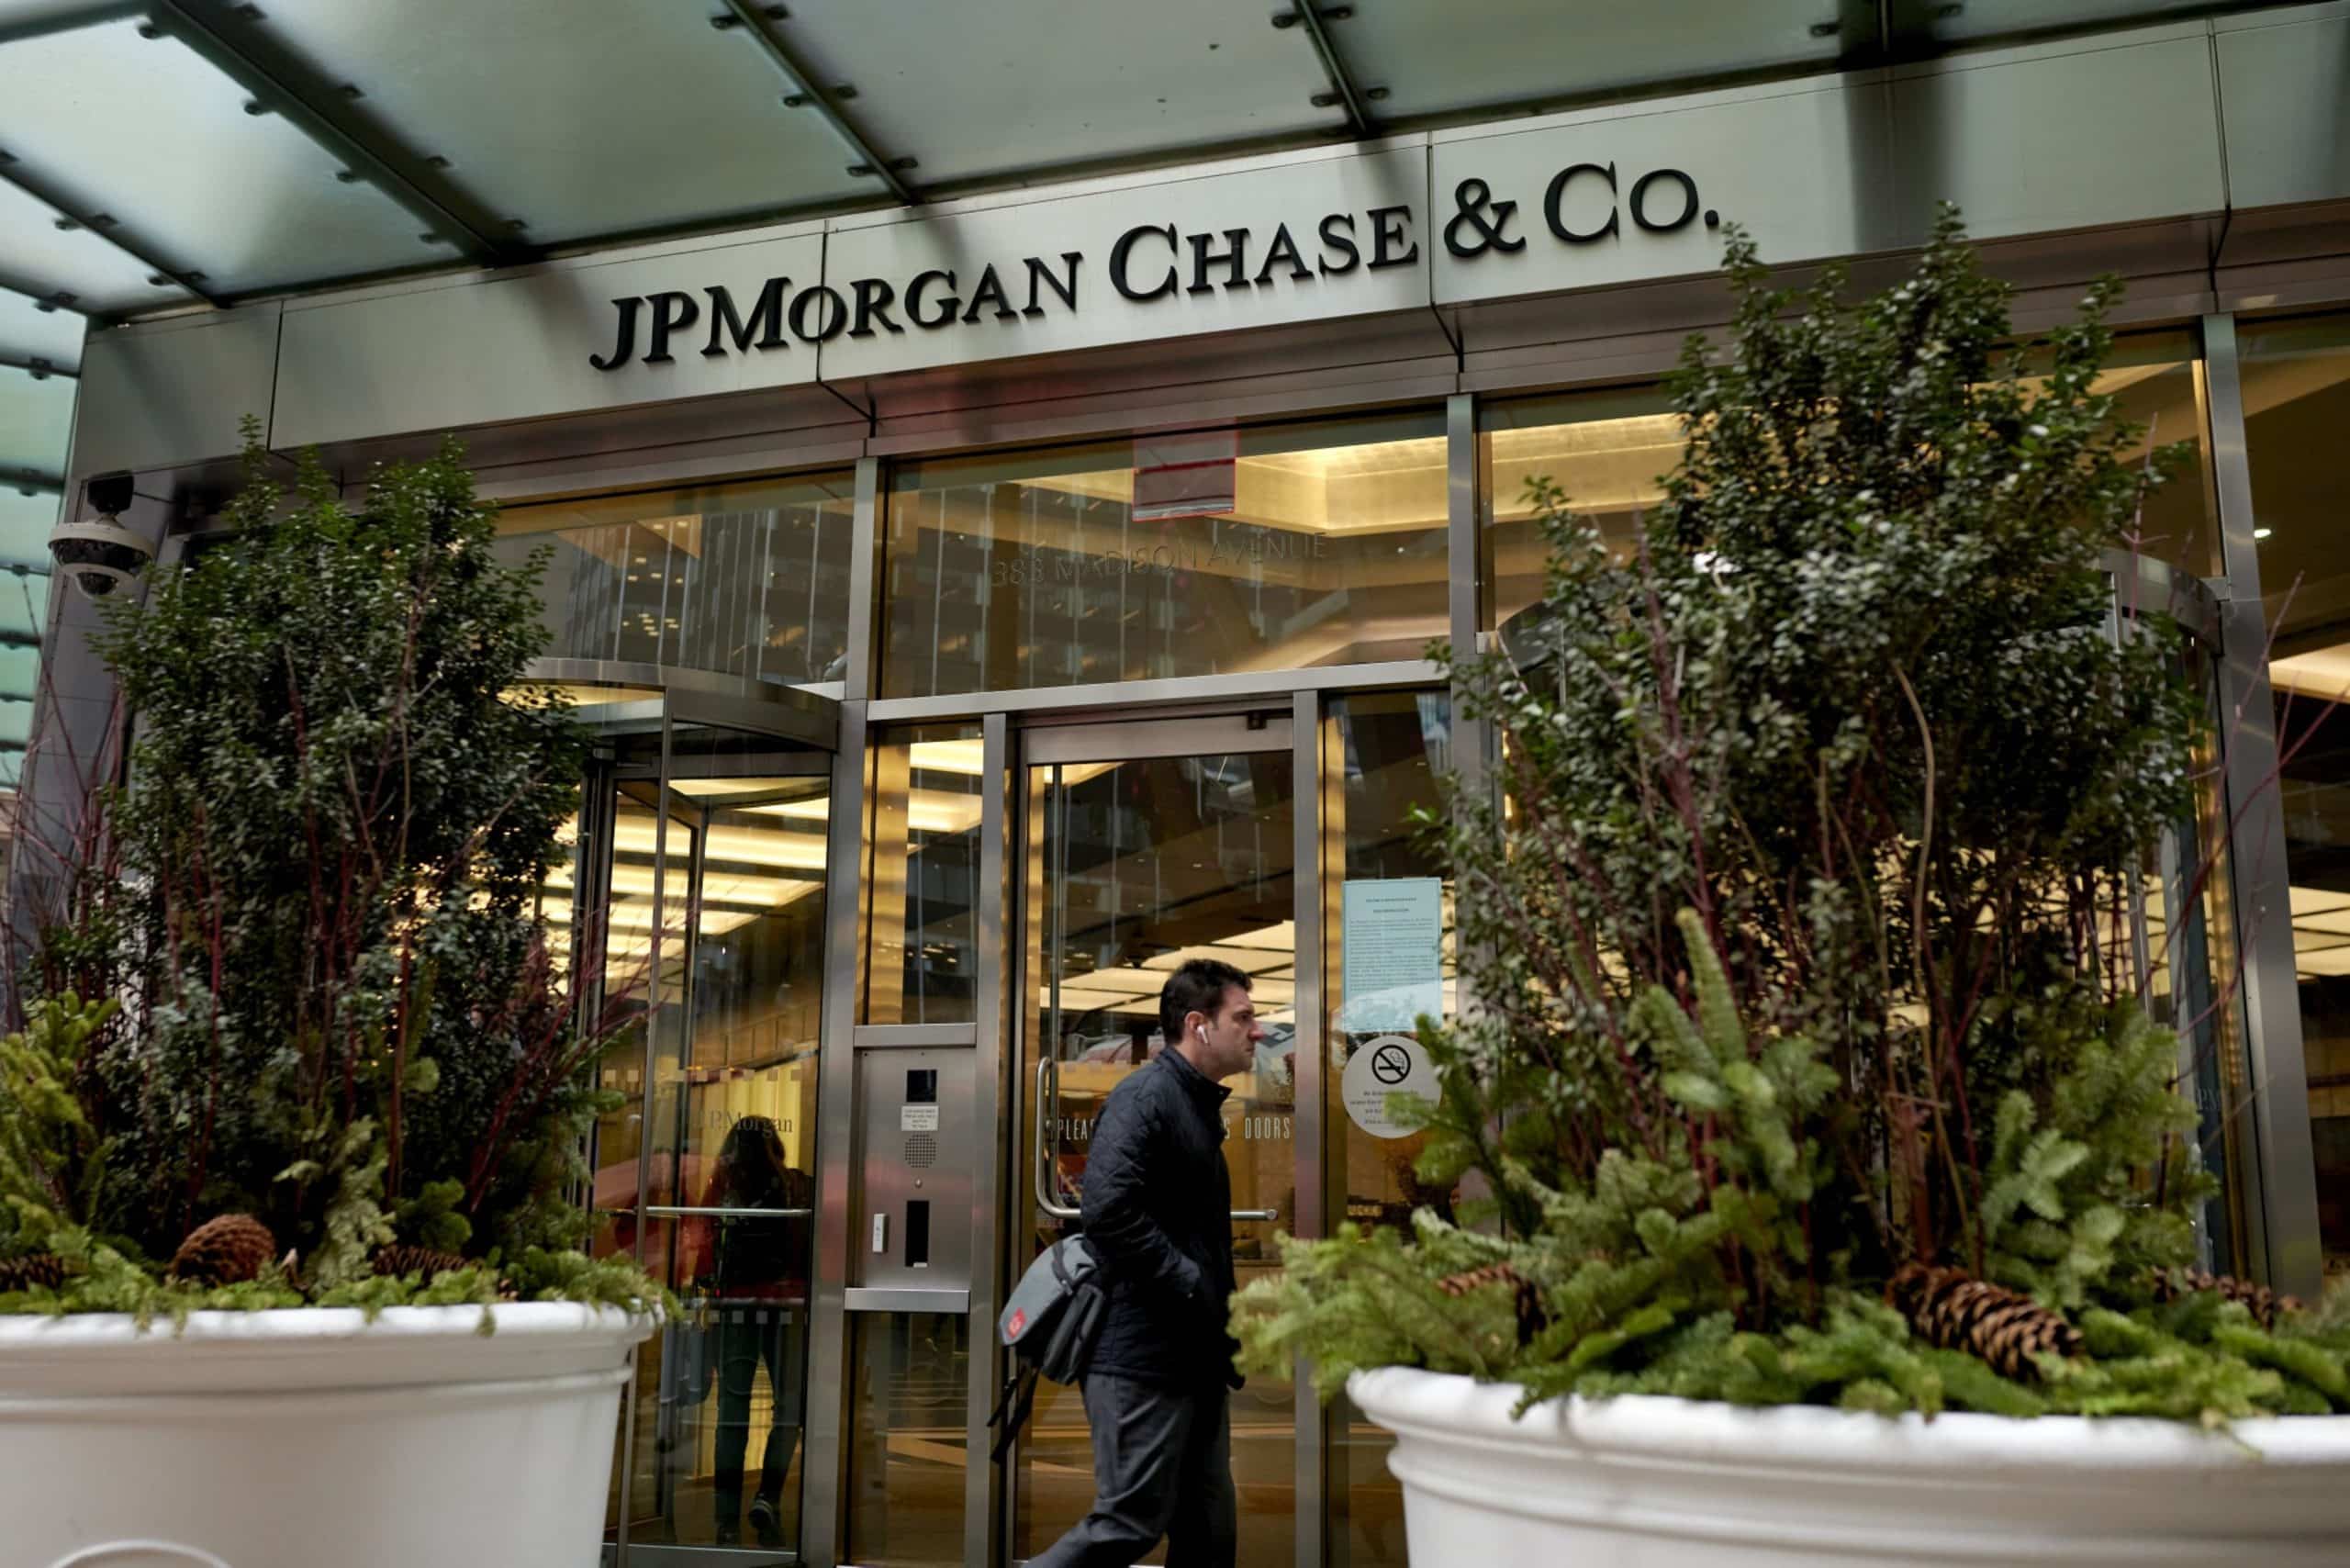 JPMorgan Chase'i tehnikakulutused langevad aastaga 7%, 2.1 miljardi dollarini